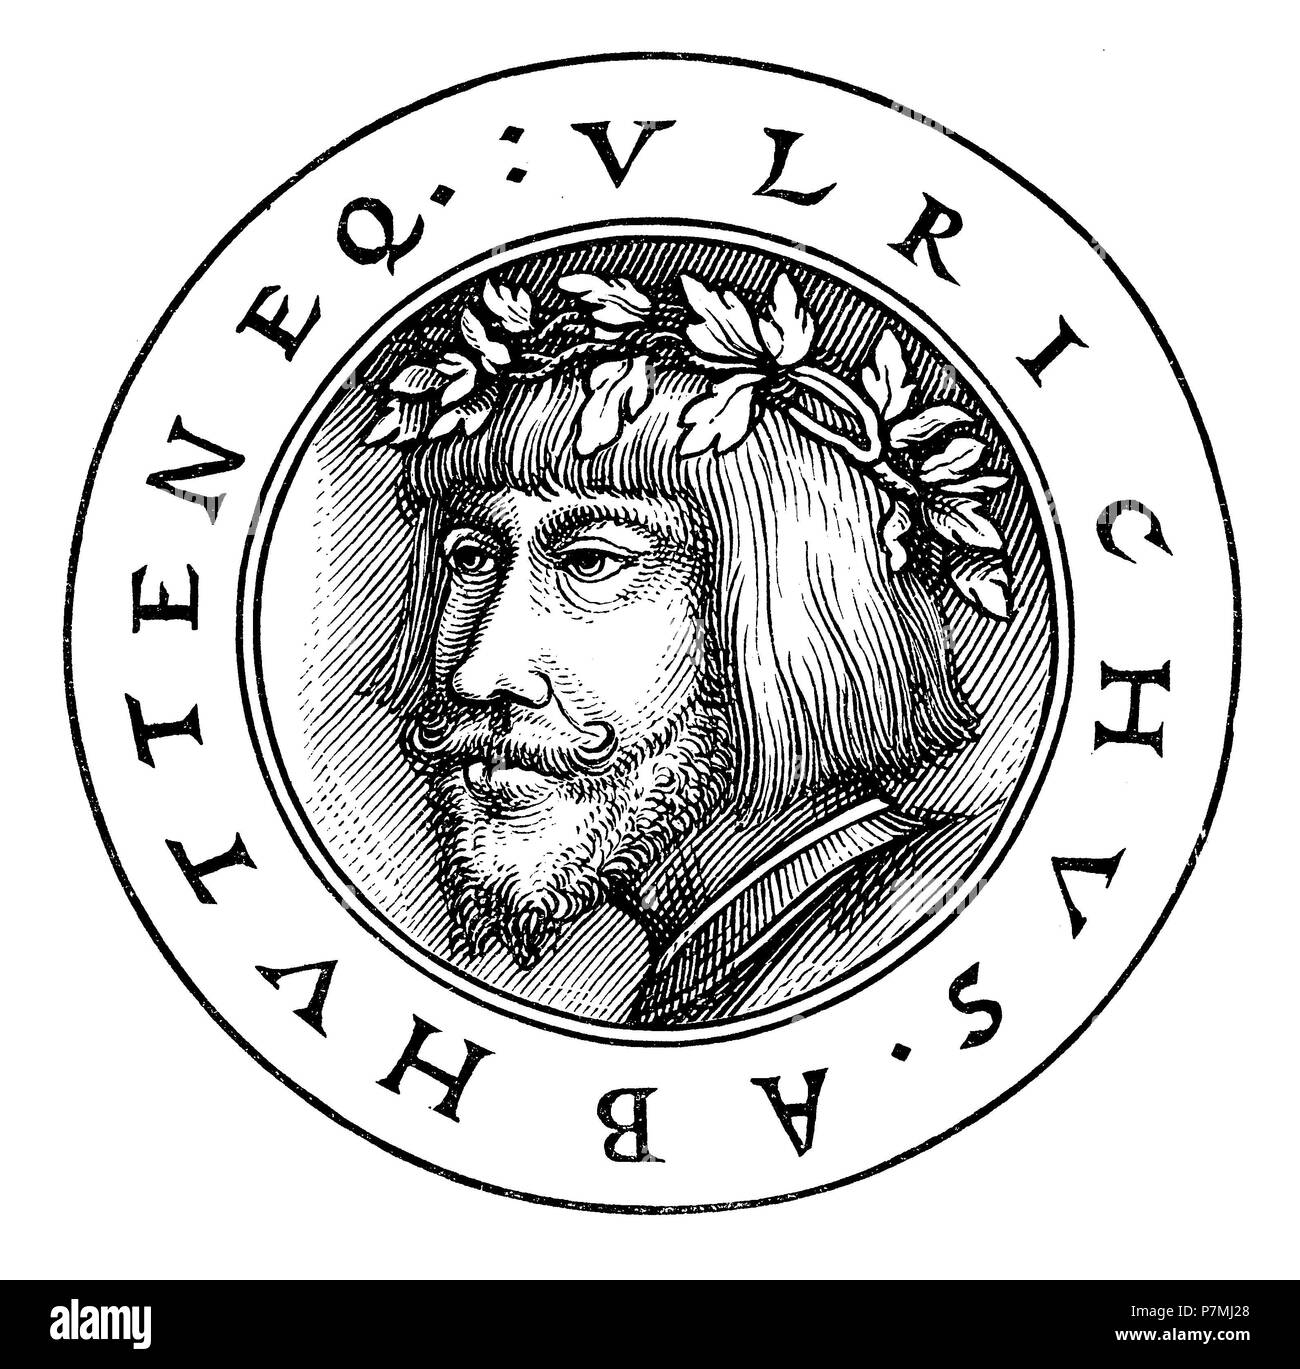 Hutten, Ulrich von (1488-1523), cavaliere imperiale e umanista. Ulrich von Hutten il ritratto di uno dei suoi opuscoli contro Erasmus. Dopo la copia della libreria dei librai tedeschi a Lipsia, 1881 Foto Stock